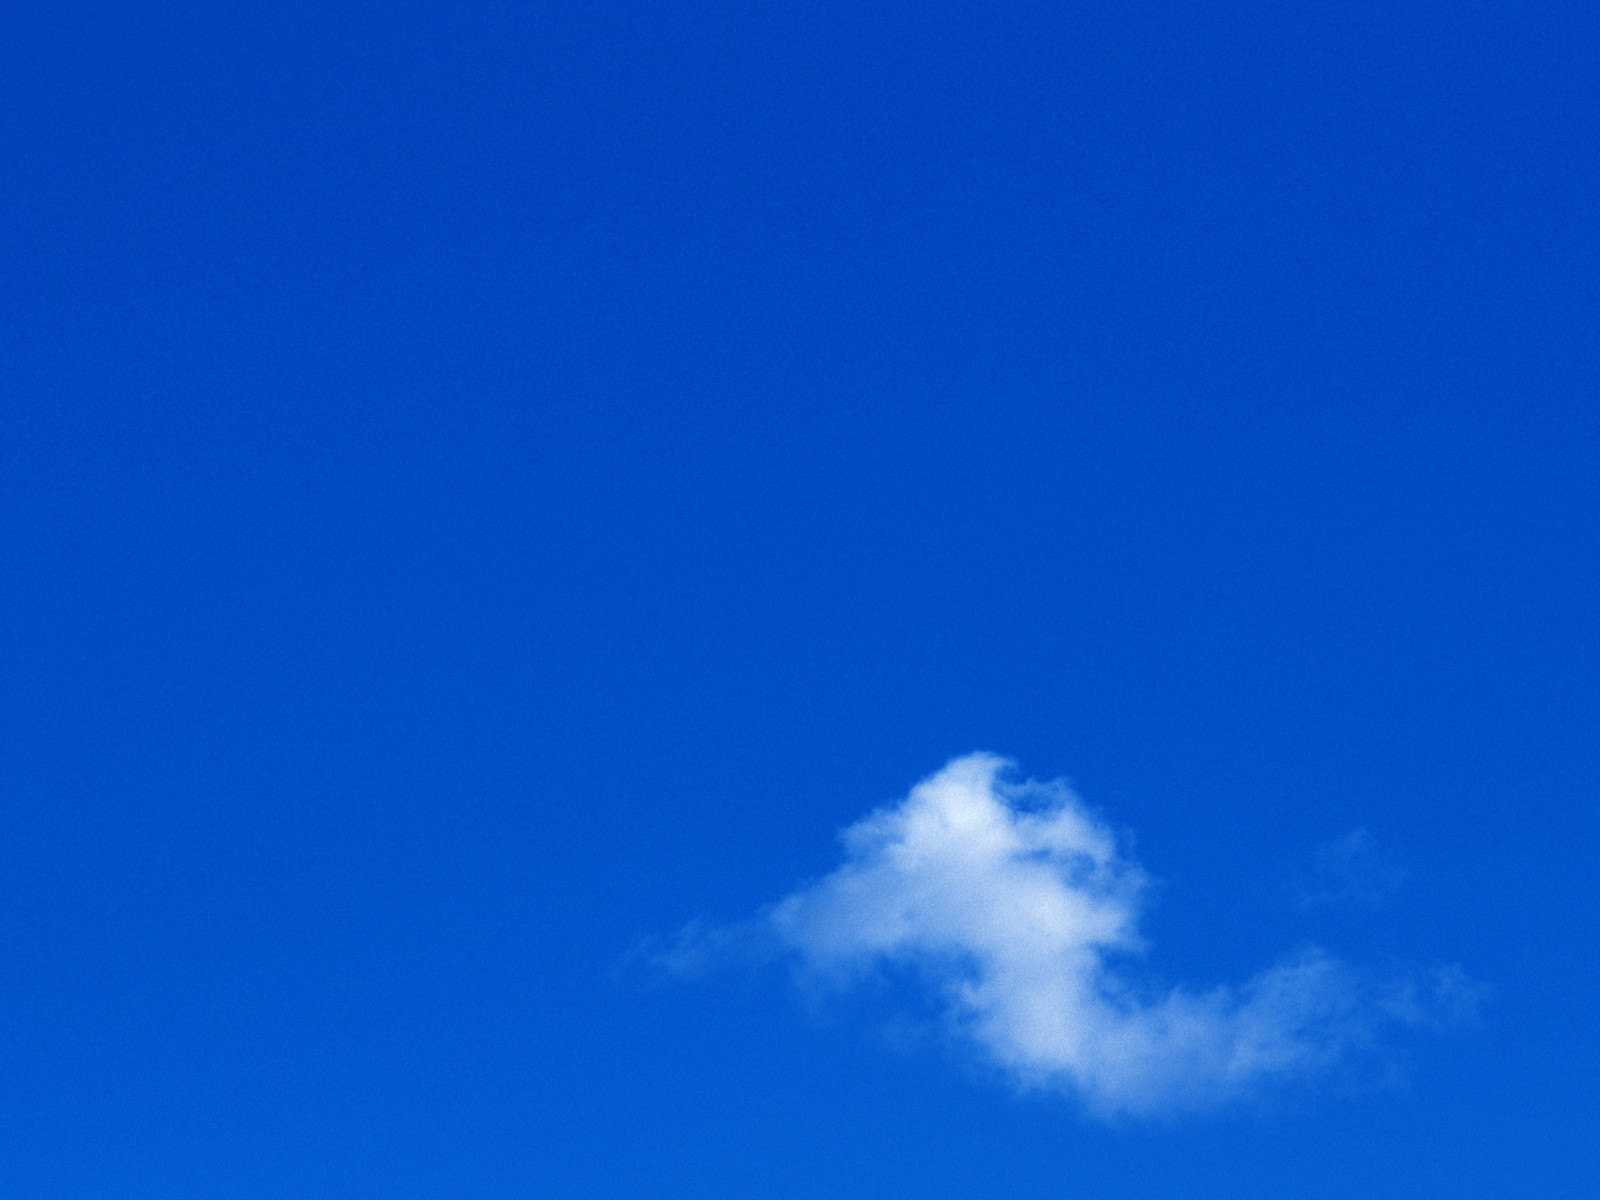 壁纸1600x1200 天空白云图片 天空云彩壁纸 蔚蓝天空-蓝天白云壁纸壁纸 蔚蓝天空-蓝天白云壁纸图片 蔚蓝天空-蓝天白云壁纸素材 风景壁纸 风景图库 风景图片素材桌面壁纸